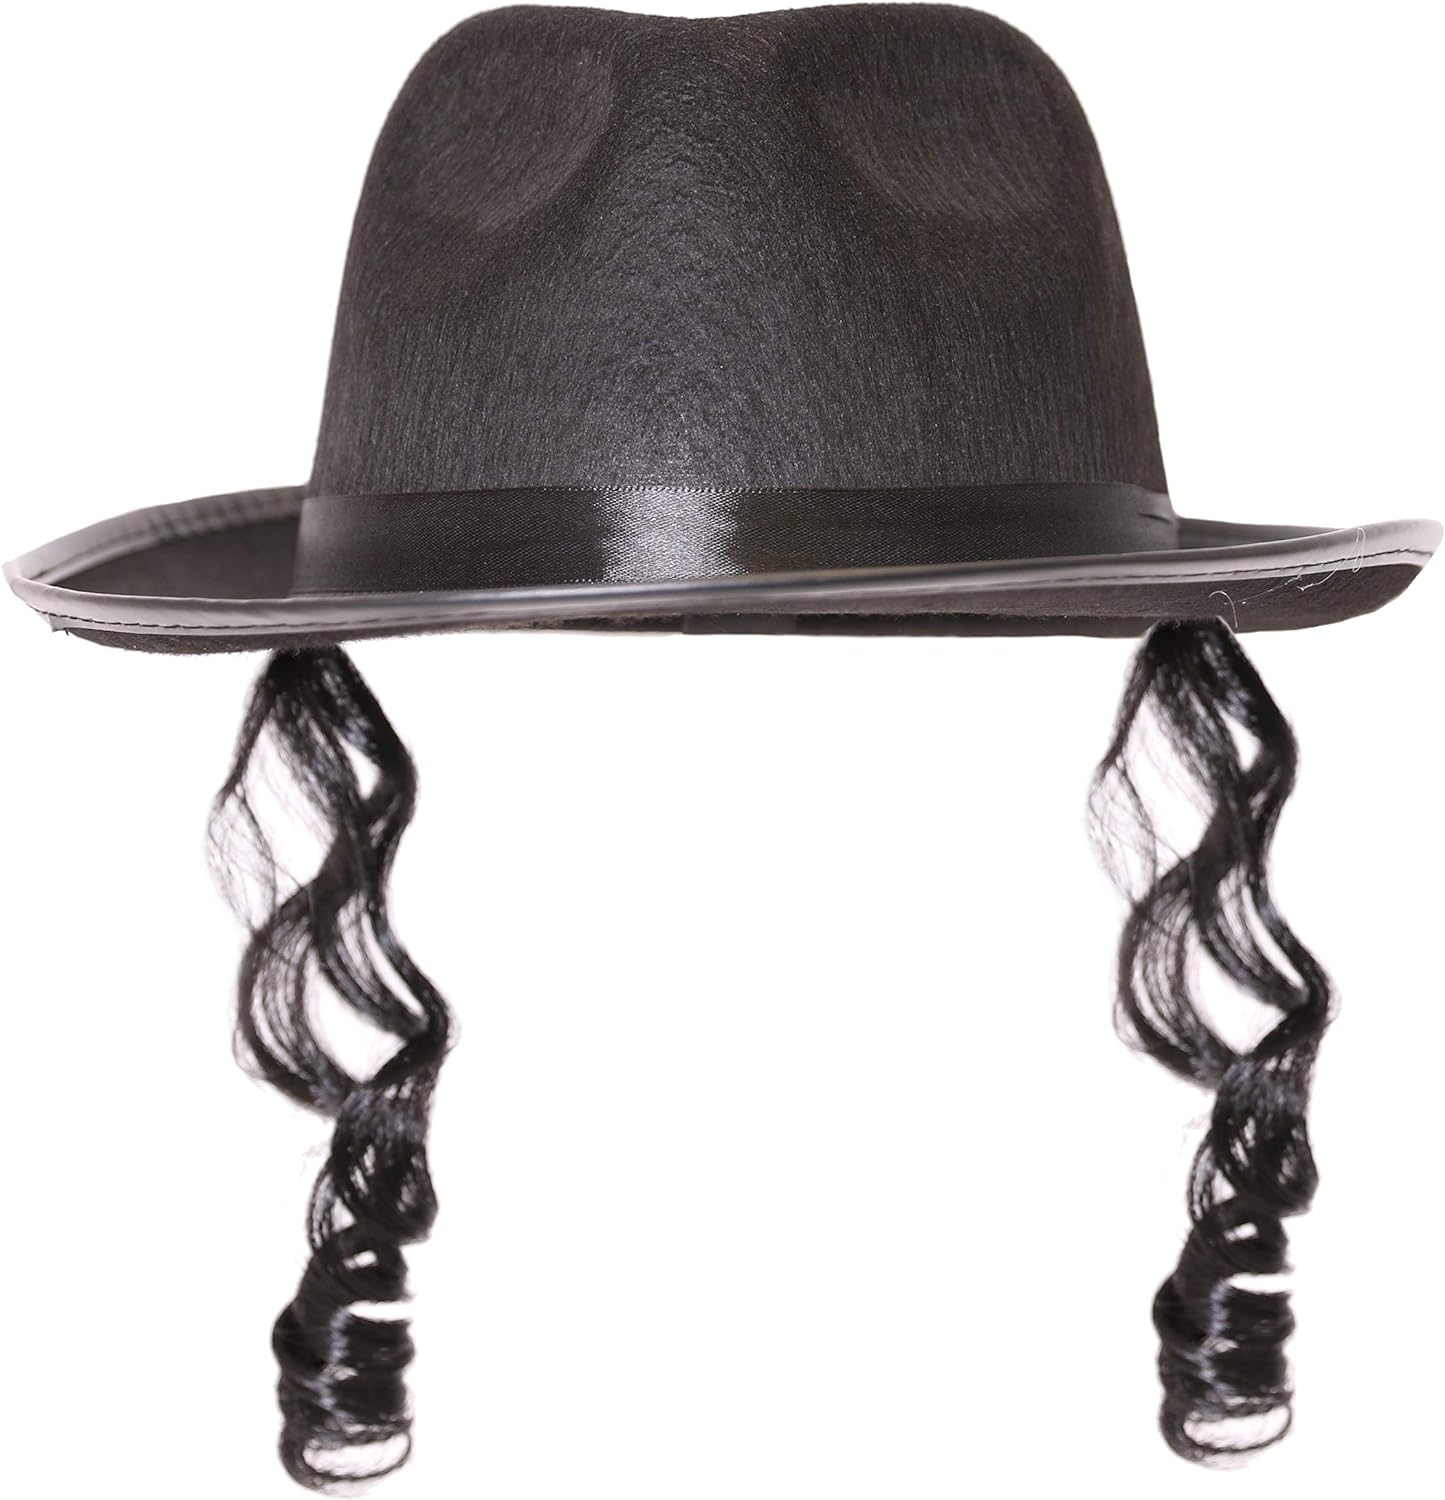 Jewish Rabbi Fancy Sukienka Ortodox Czarny Hat Curly Sideburns Tylko